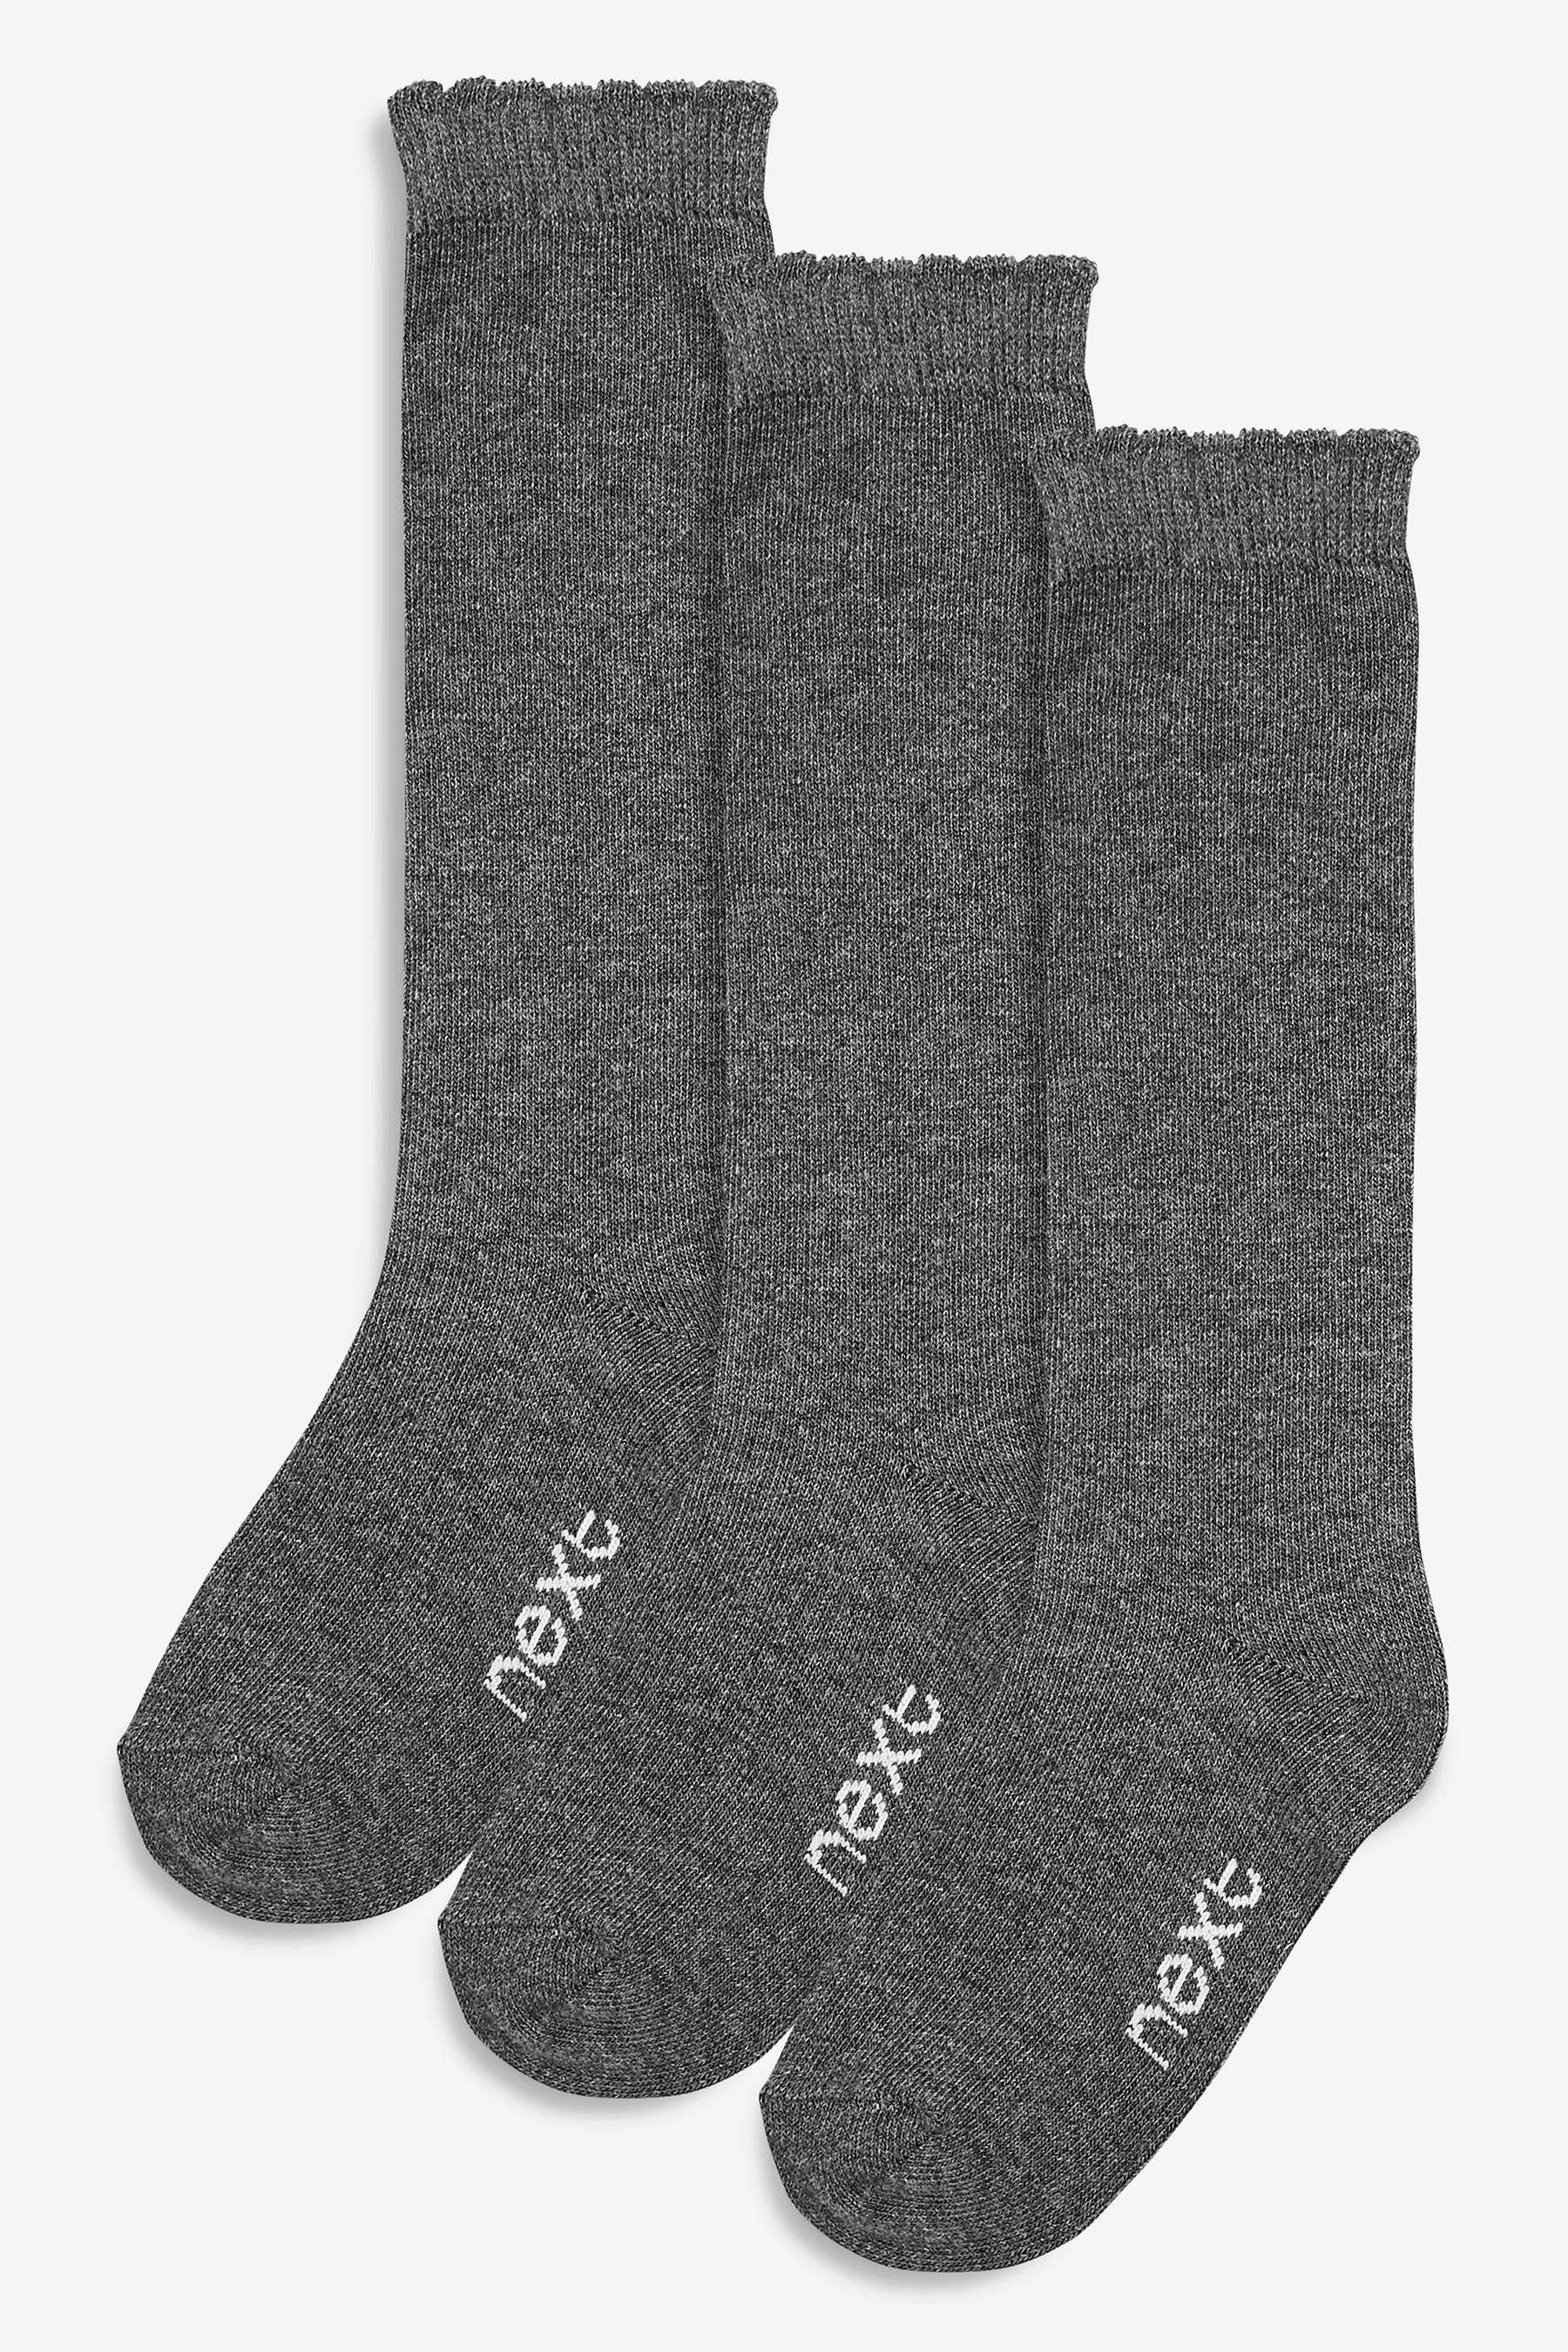 Next Socken Kniestrümpfe mit hohem Baumwollanteil, 3er-Pack (3-Paar), Mode  und Accessoires für die ganze Familie